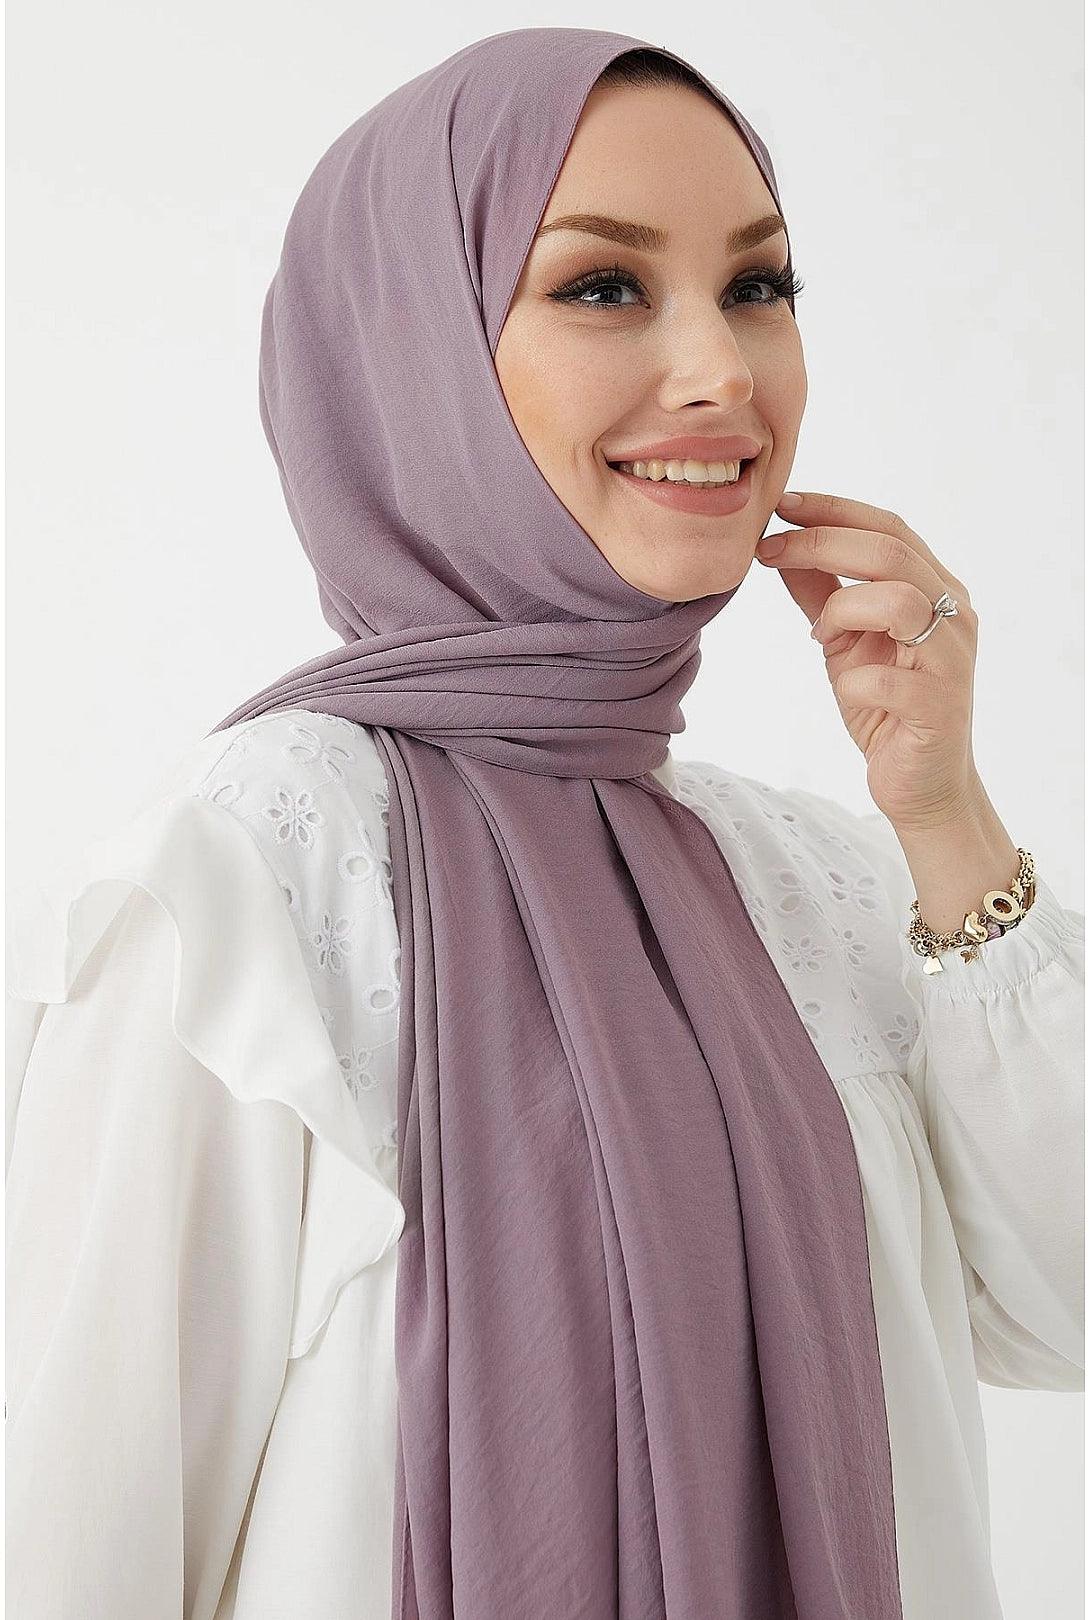 Jazz Modest Hijab Scarf for Women - Lilac Purple